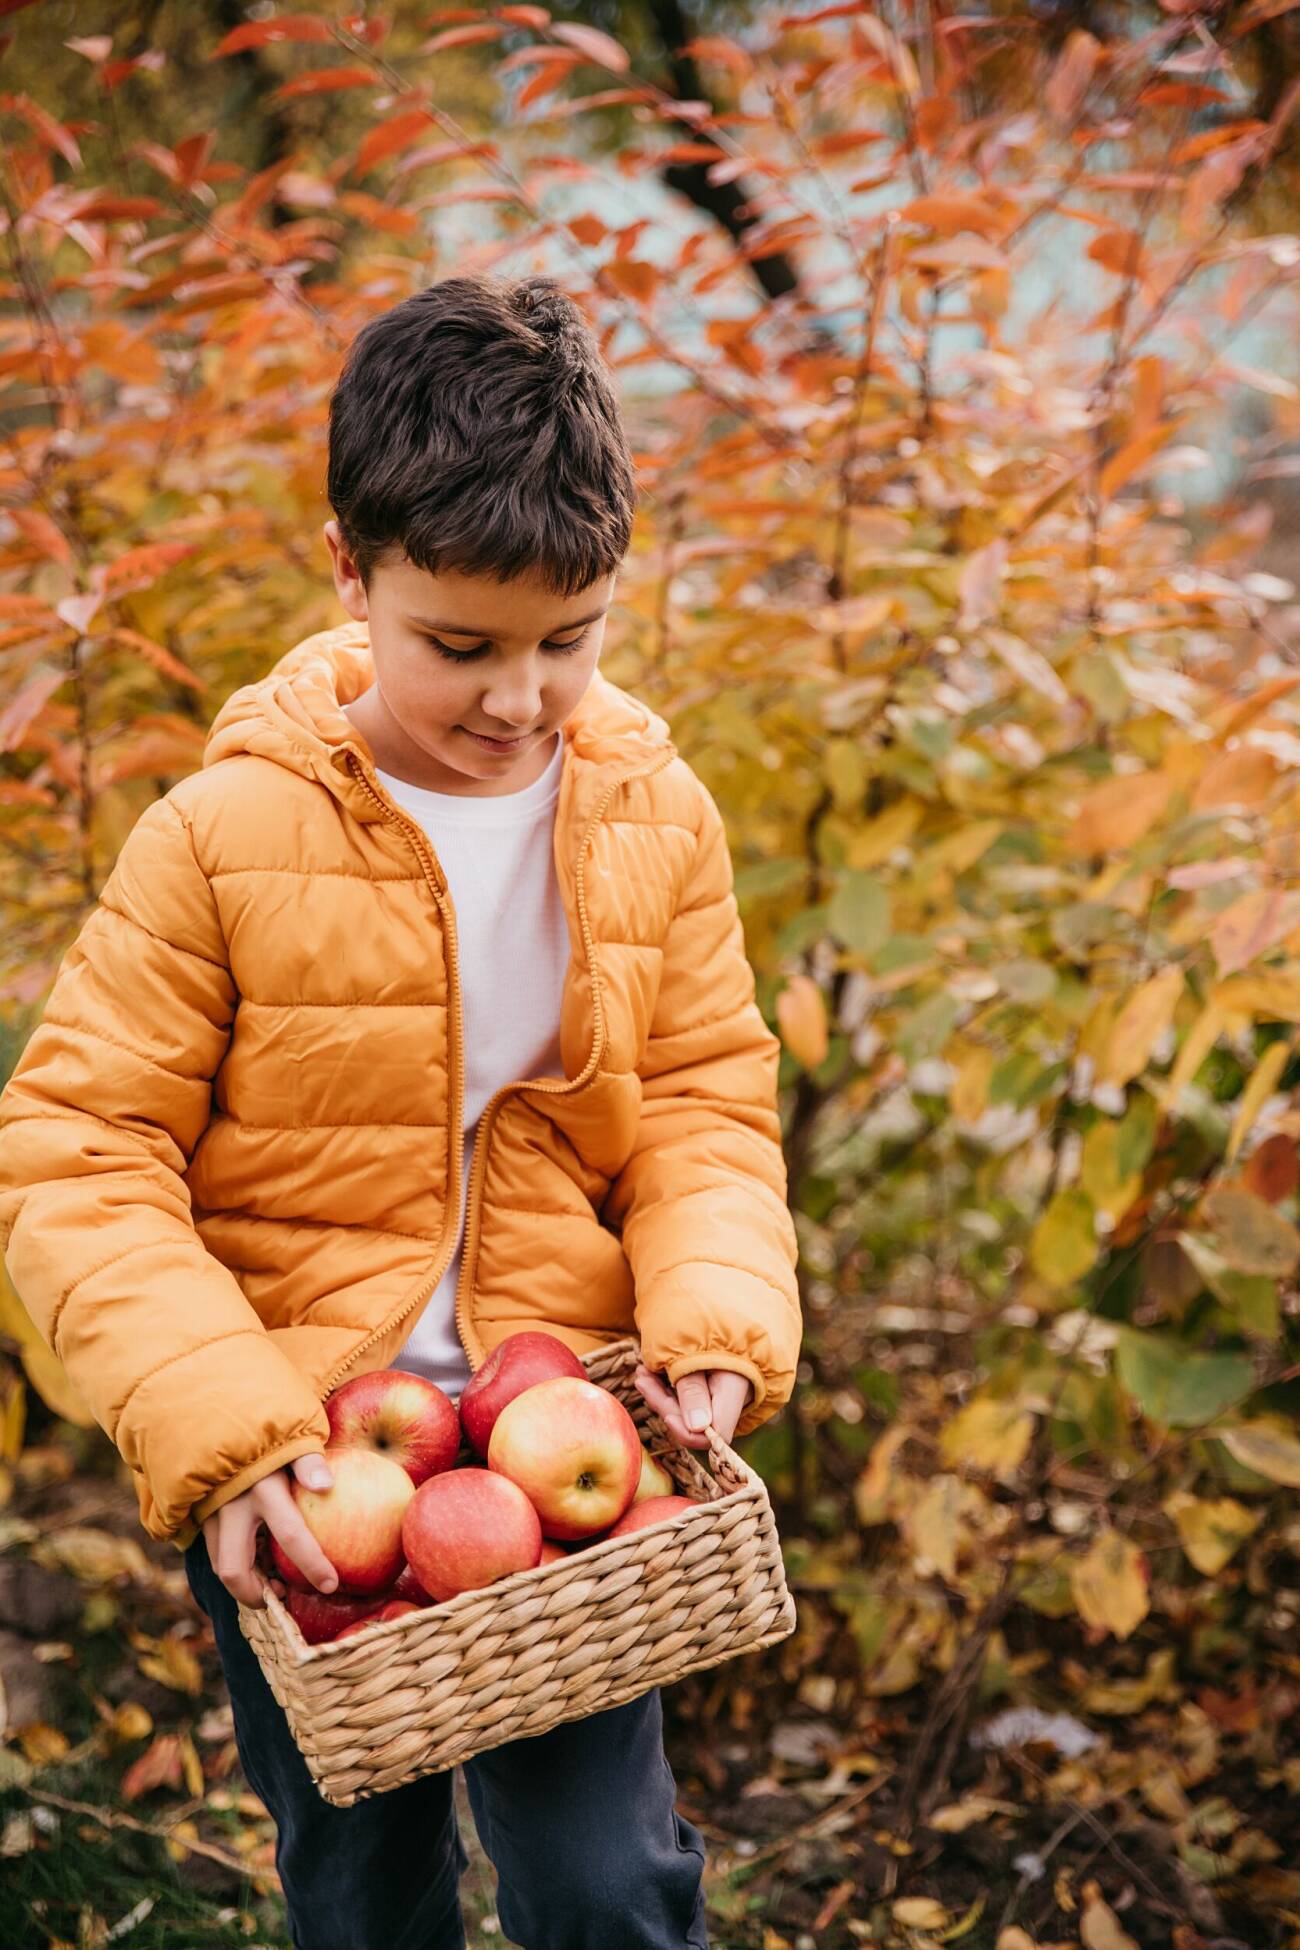 pojke med äpplen i en korg